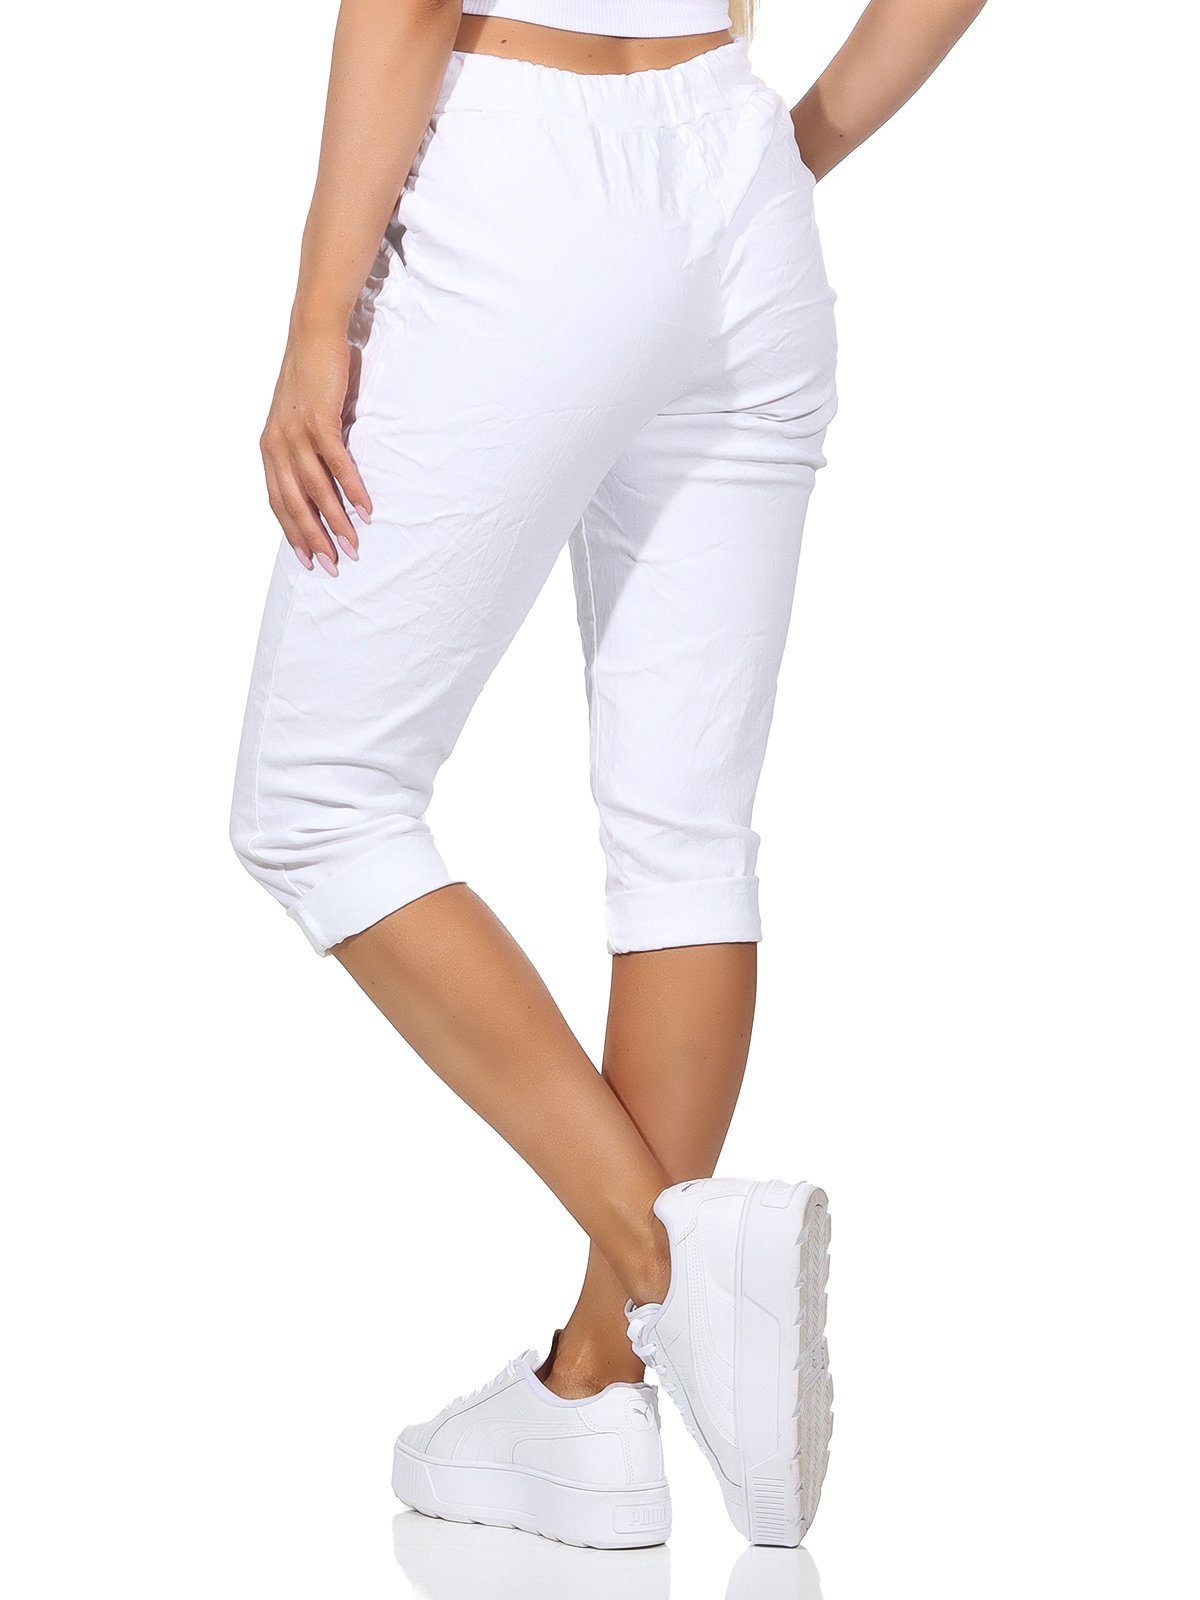 Aurela Damenmode in Kordelzug, Damen sommerlichen Sommerhose Capri 36-44 Weiß Jeans Farben, und 7/8-Hose Taschen Hose Kurze Bermuda